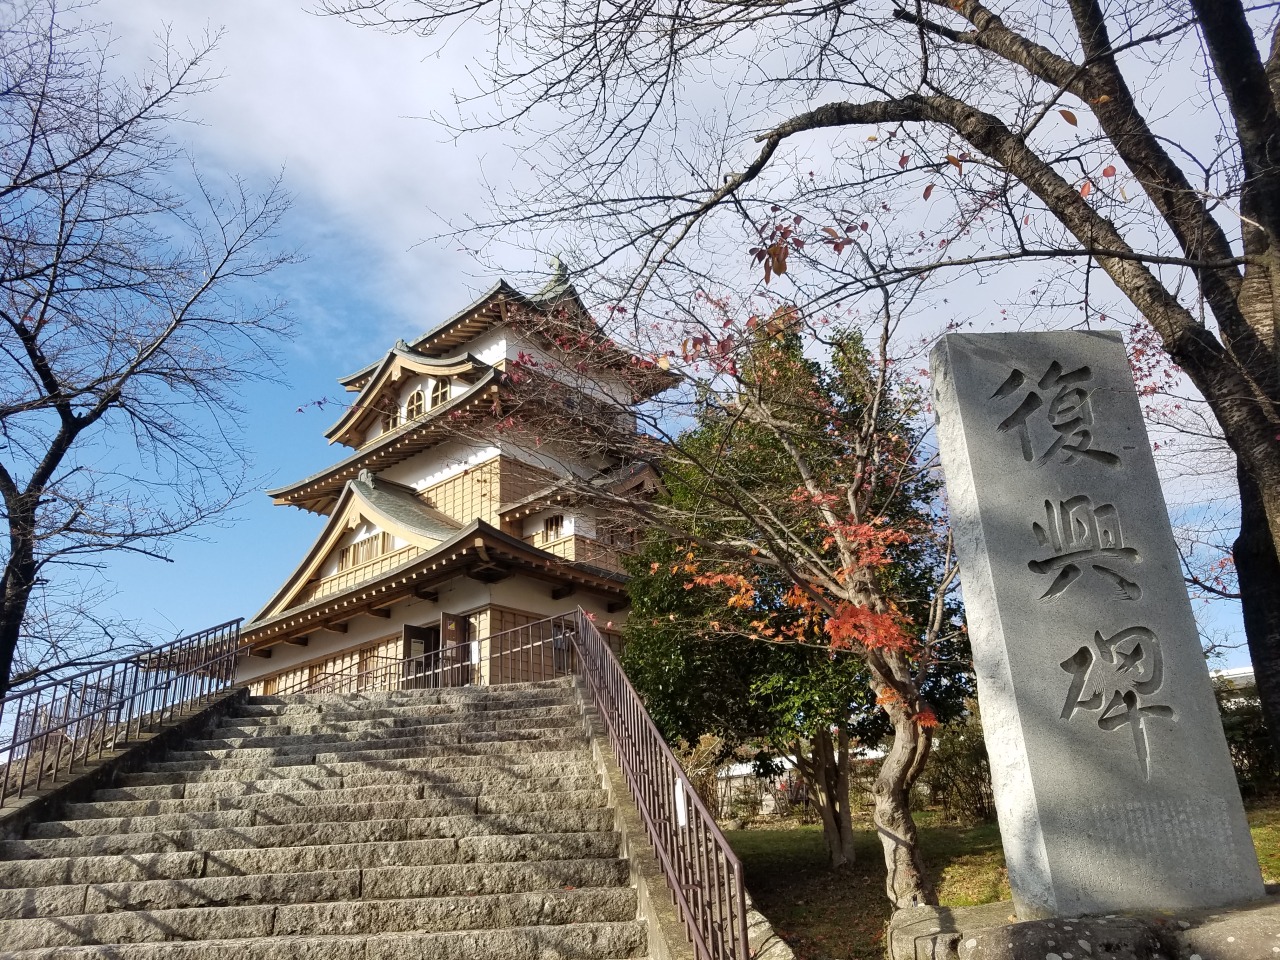 Takashima castle